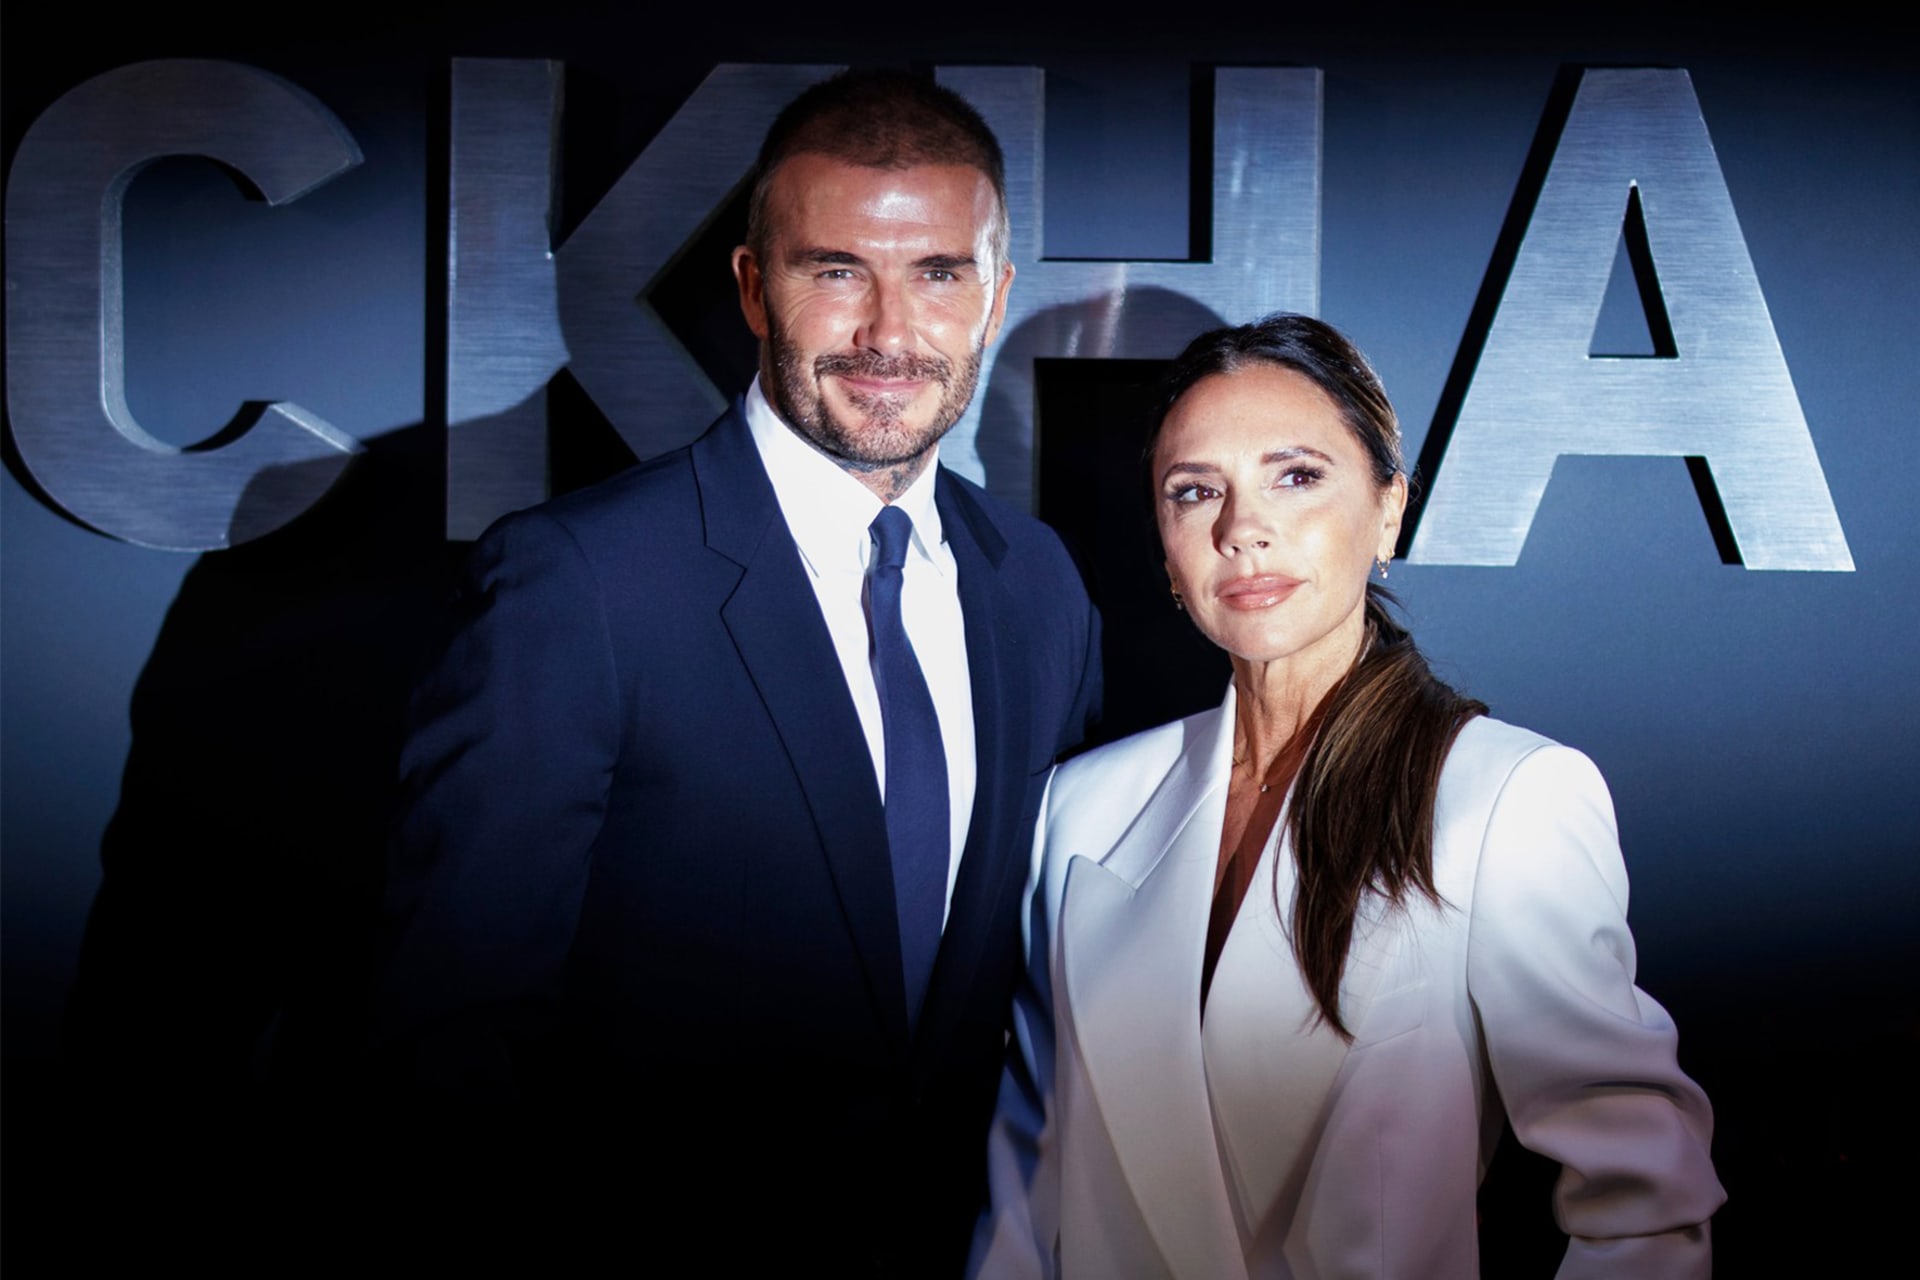 Mezi nejúspěšnější filmařské počiny letoška patří dokumentární seriál Beckham, v němž hraje krom slavného fotbalisty podstatnou roli i manželka Victoria. Co o ní víme?